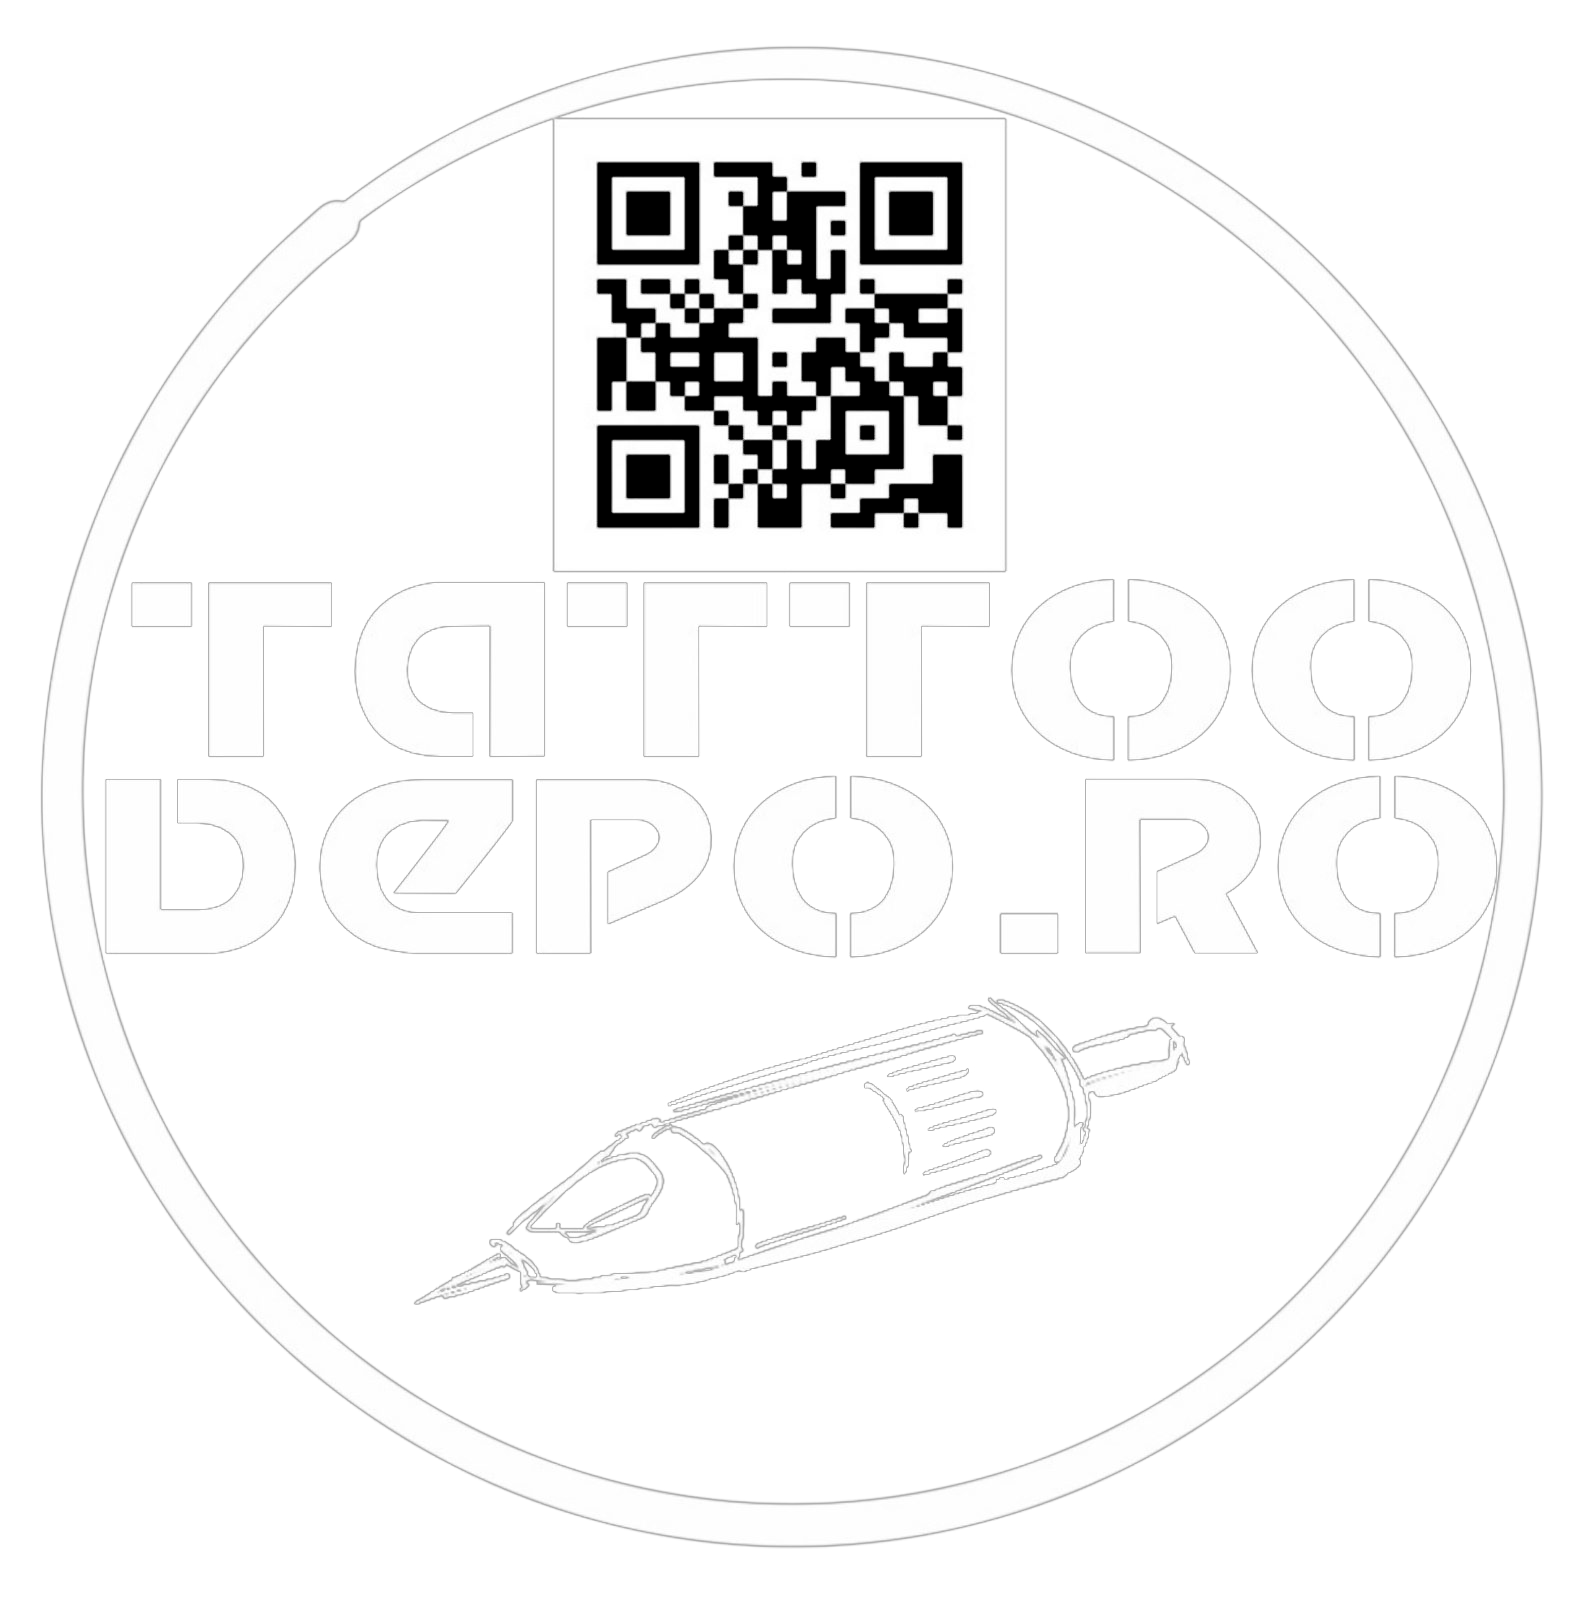 World Famous Tattoo Ink,Cerneală tatuaj 30ml,World Famous Limitless Ink,Culori tatuaj vibrante,Cerneală de calitate pentru tatuaj,Ink pentru tatuatori profesioniști,Tatuaje culori intense,World Famous Ink,Pigment tatuaj  30ml,Cerneală tatuaj durabilă,World Famous 30ml tatuaj,Ink tatuaj premium,Tatuaj culori World Famous,Cerneală tatuaj sigură,Tatuaje World Famous Ink,World Famous Limitless Tattoo Ink,World Famous Limitless Tattoo,World Famous 30ml,world-famous-30ml